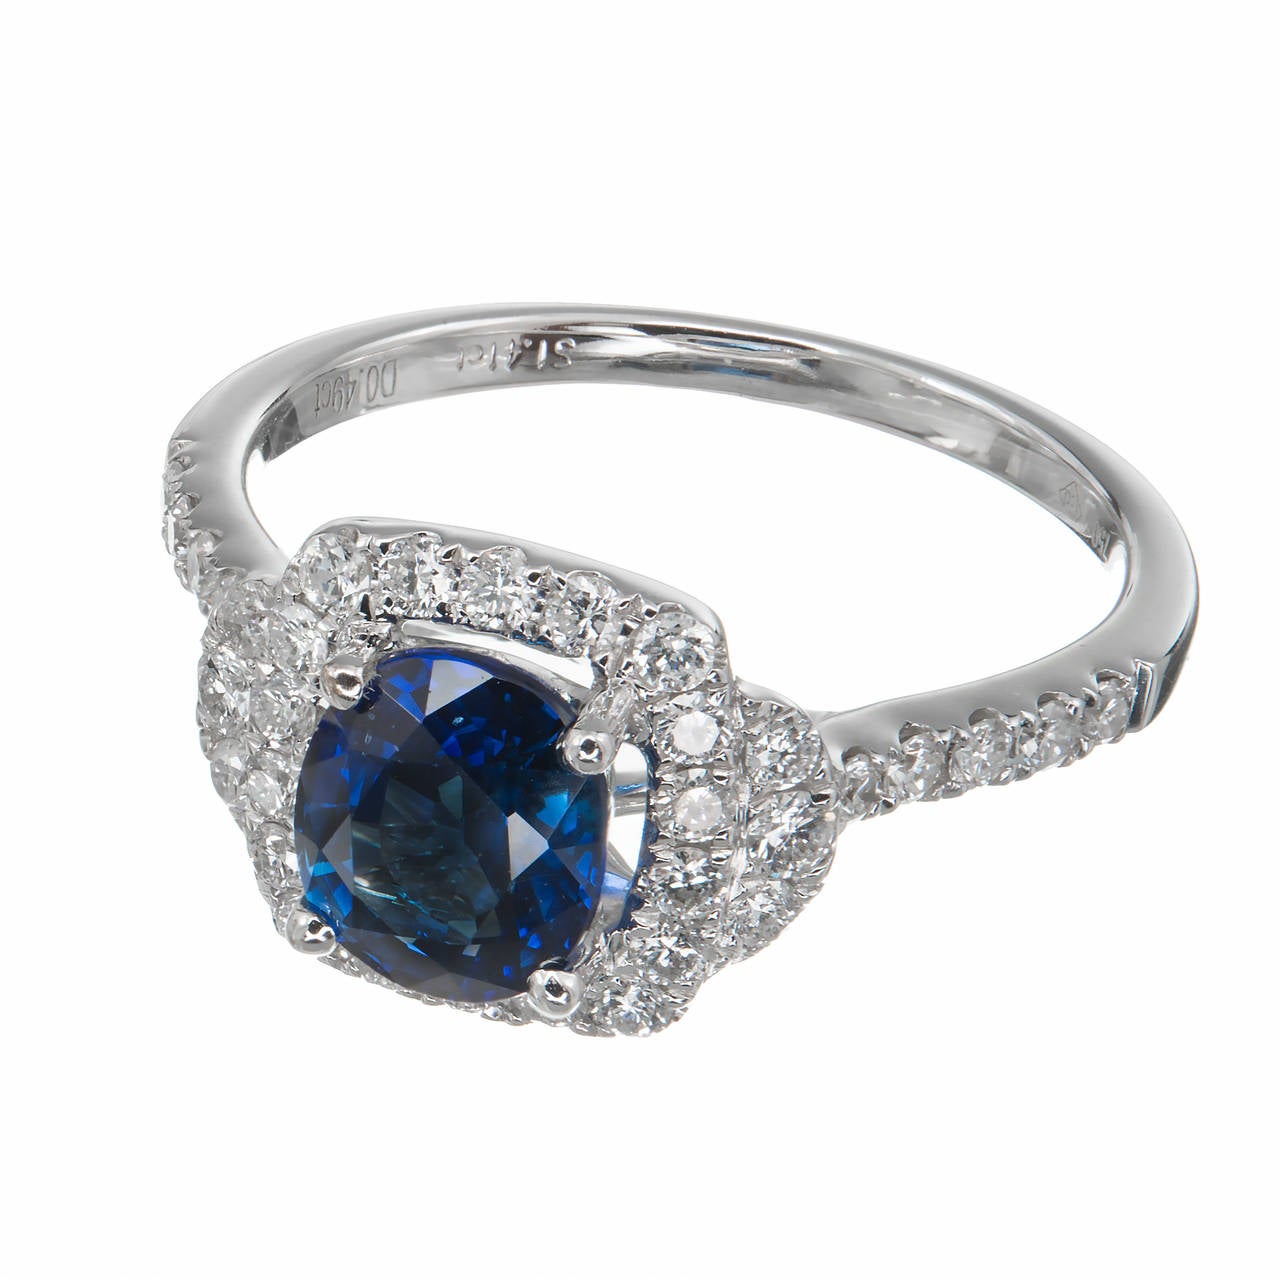 Helles, klares, reines Blau mit Kissenschliff Saphir und Diamant Halo Engagement  Ring. Schöne weiße Diamanten im Vollschliff. Zertifizierte einfache Wärme, keine weiteren Verbesserungen.

1 kissenförmiger blauer Saphir, Gesamtgewicht ca. 1,41cts,